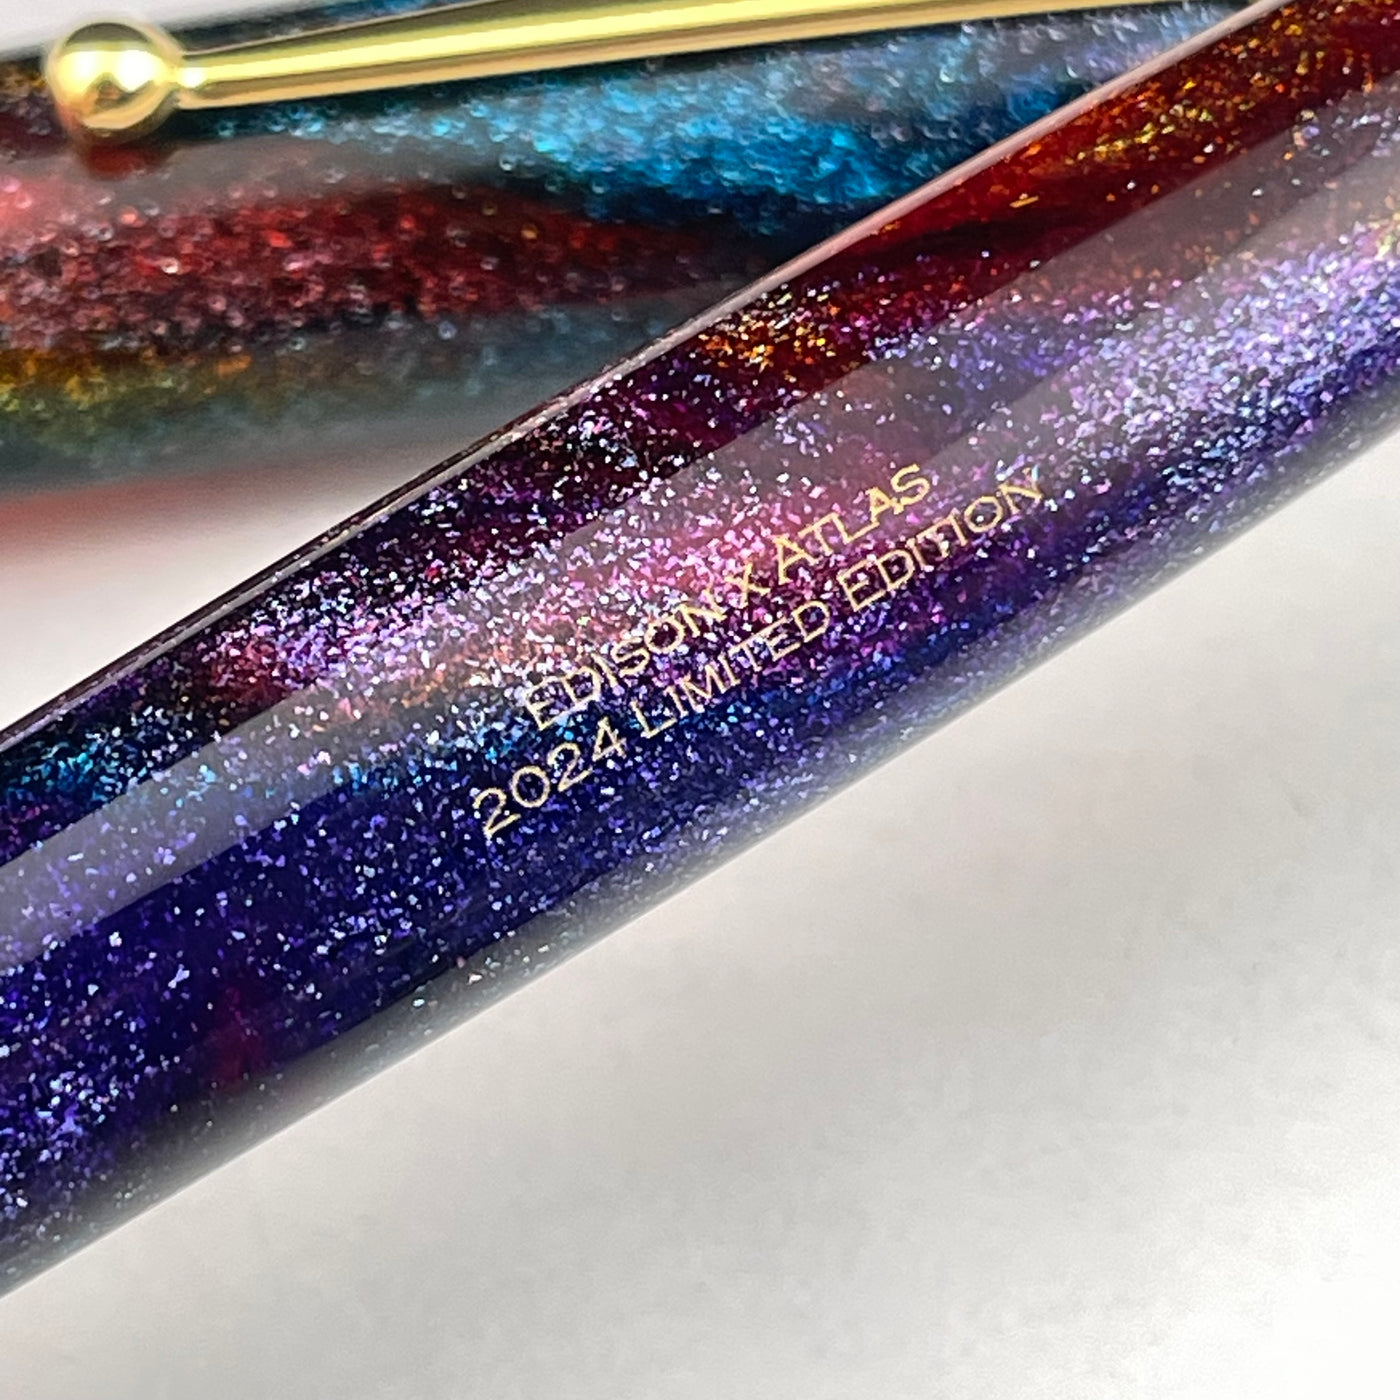 Edison Collier Fountain Pen - Galaxy (Atlas Exclusive)